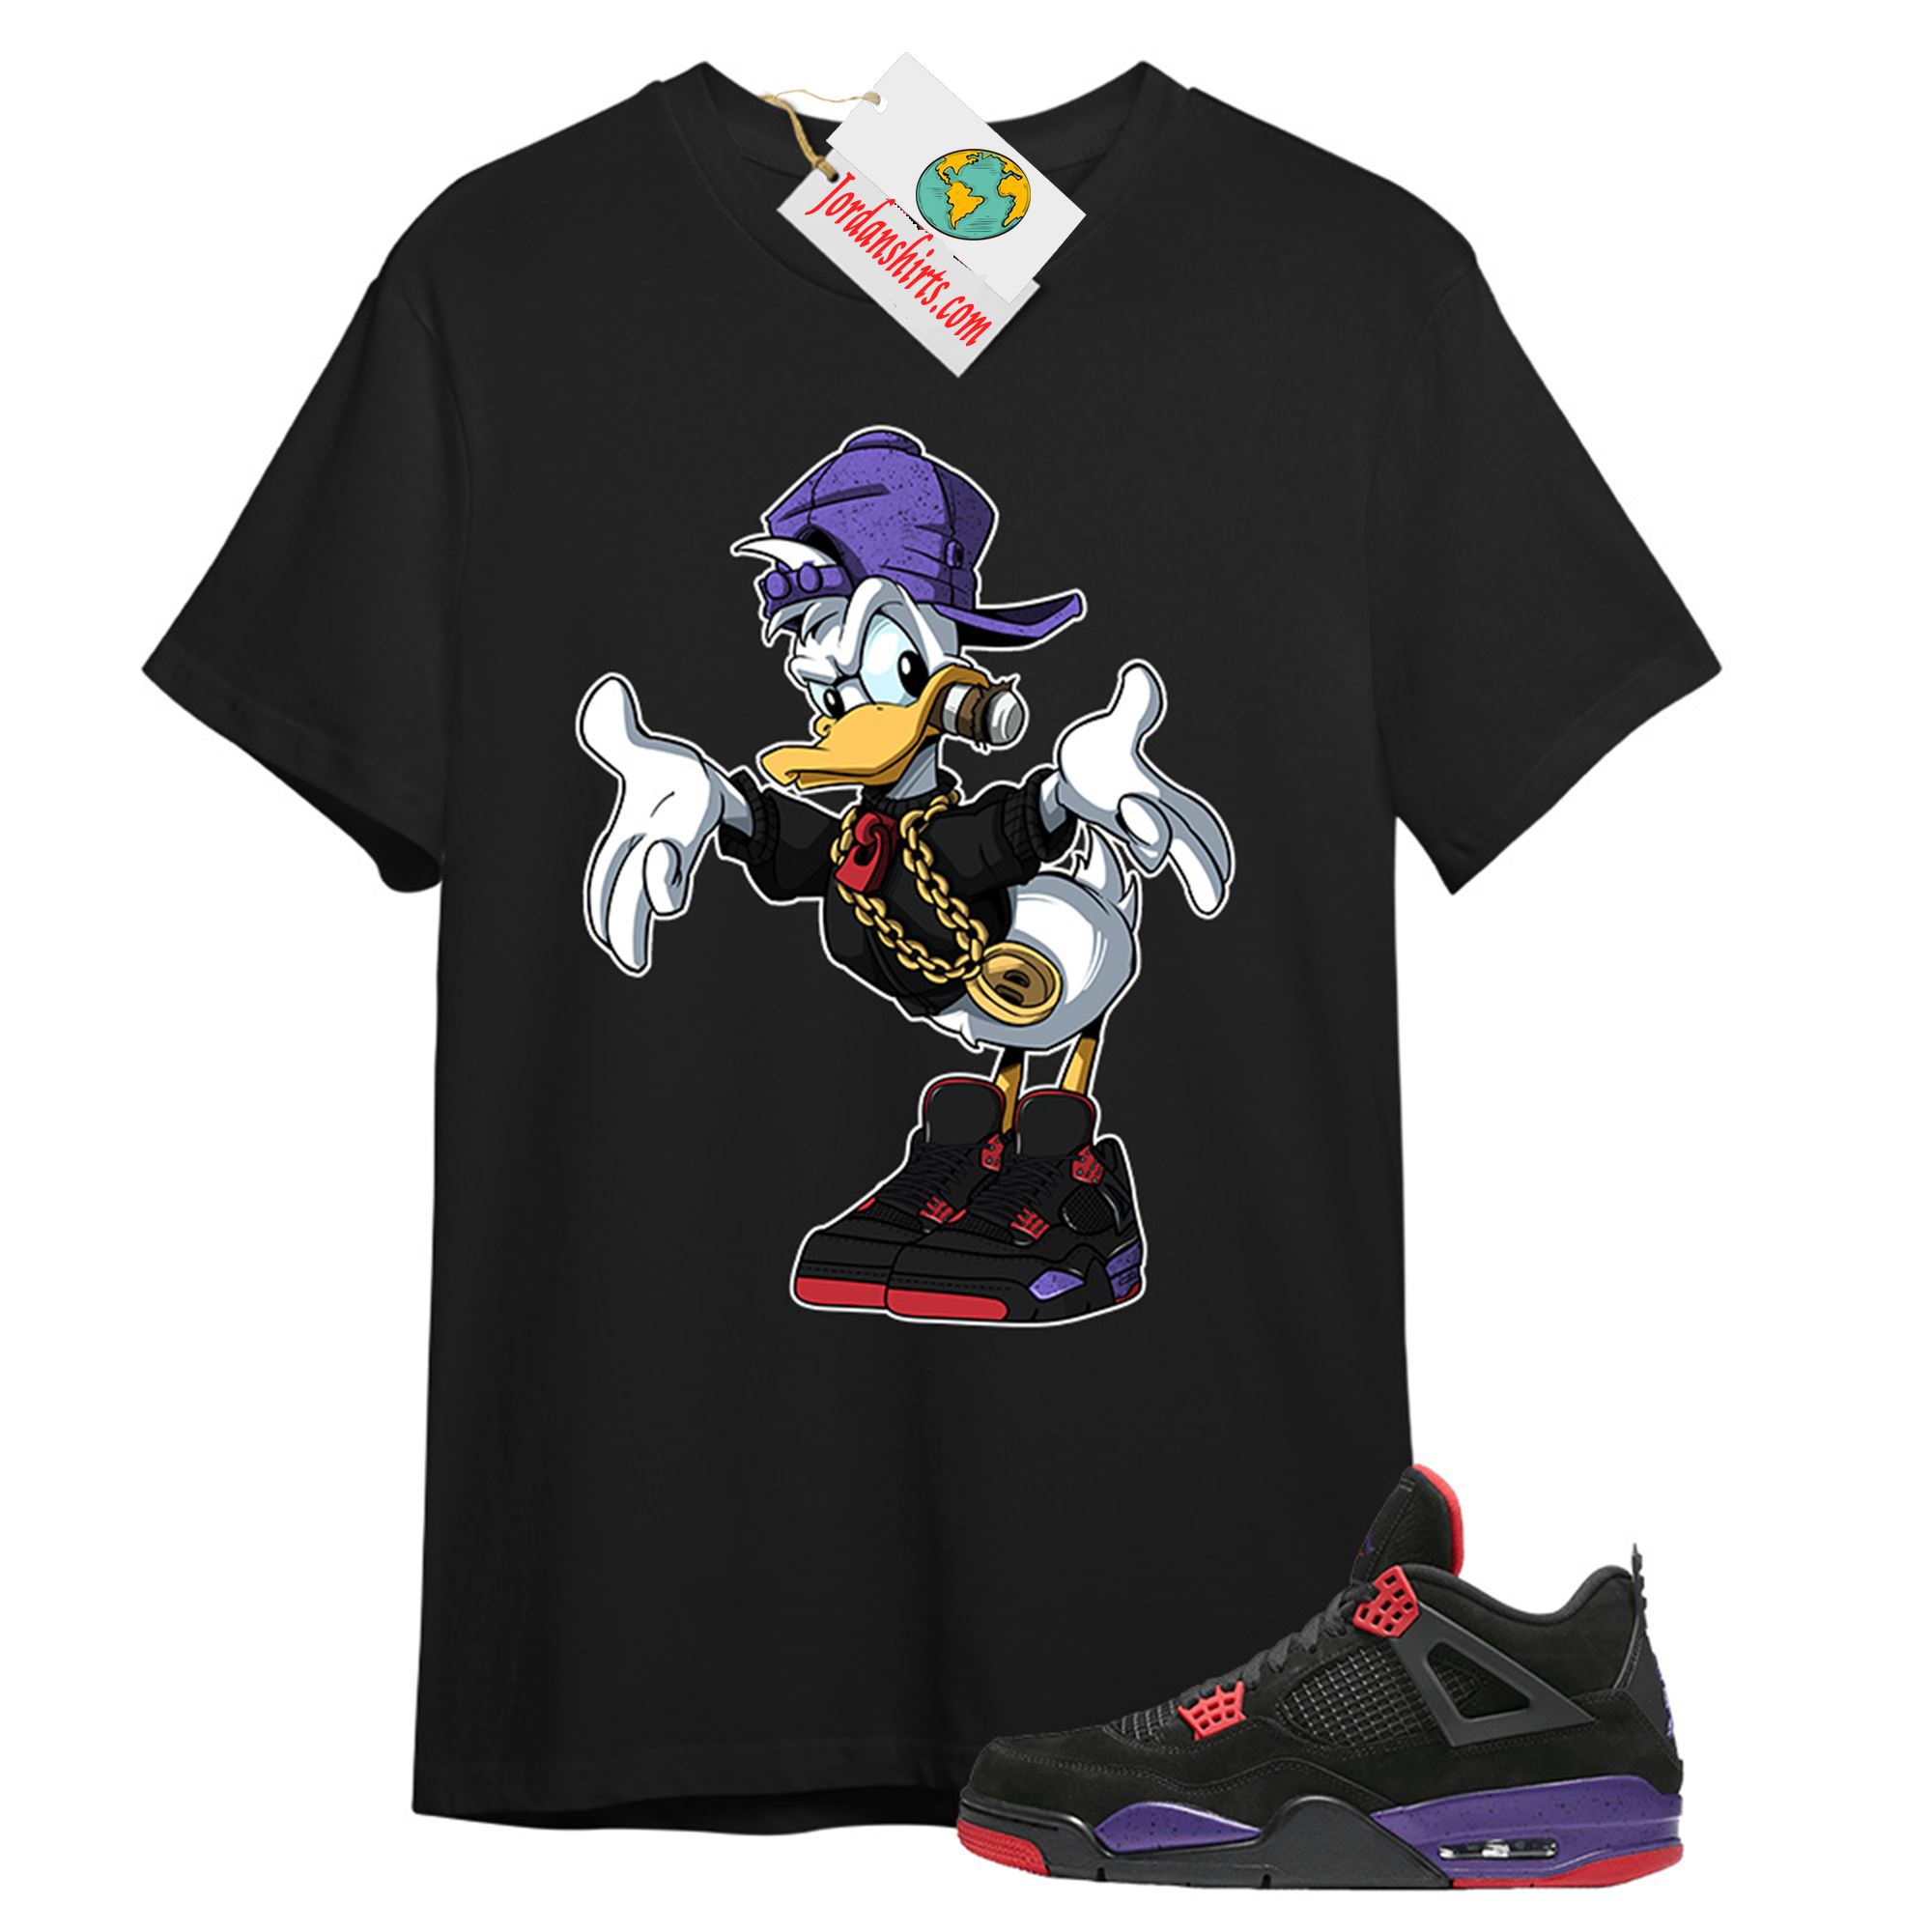 Jordan 4 Shirt, Donald Duck Black T-shirt Air Jordan 4 Raptor 4s Plus Size Up To 5xl